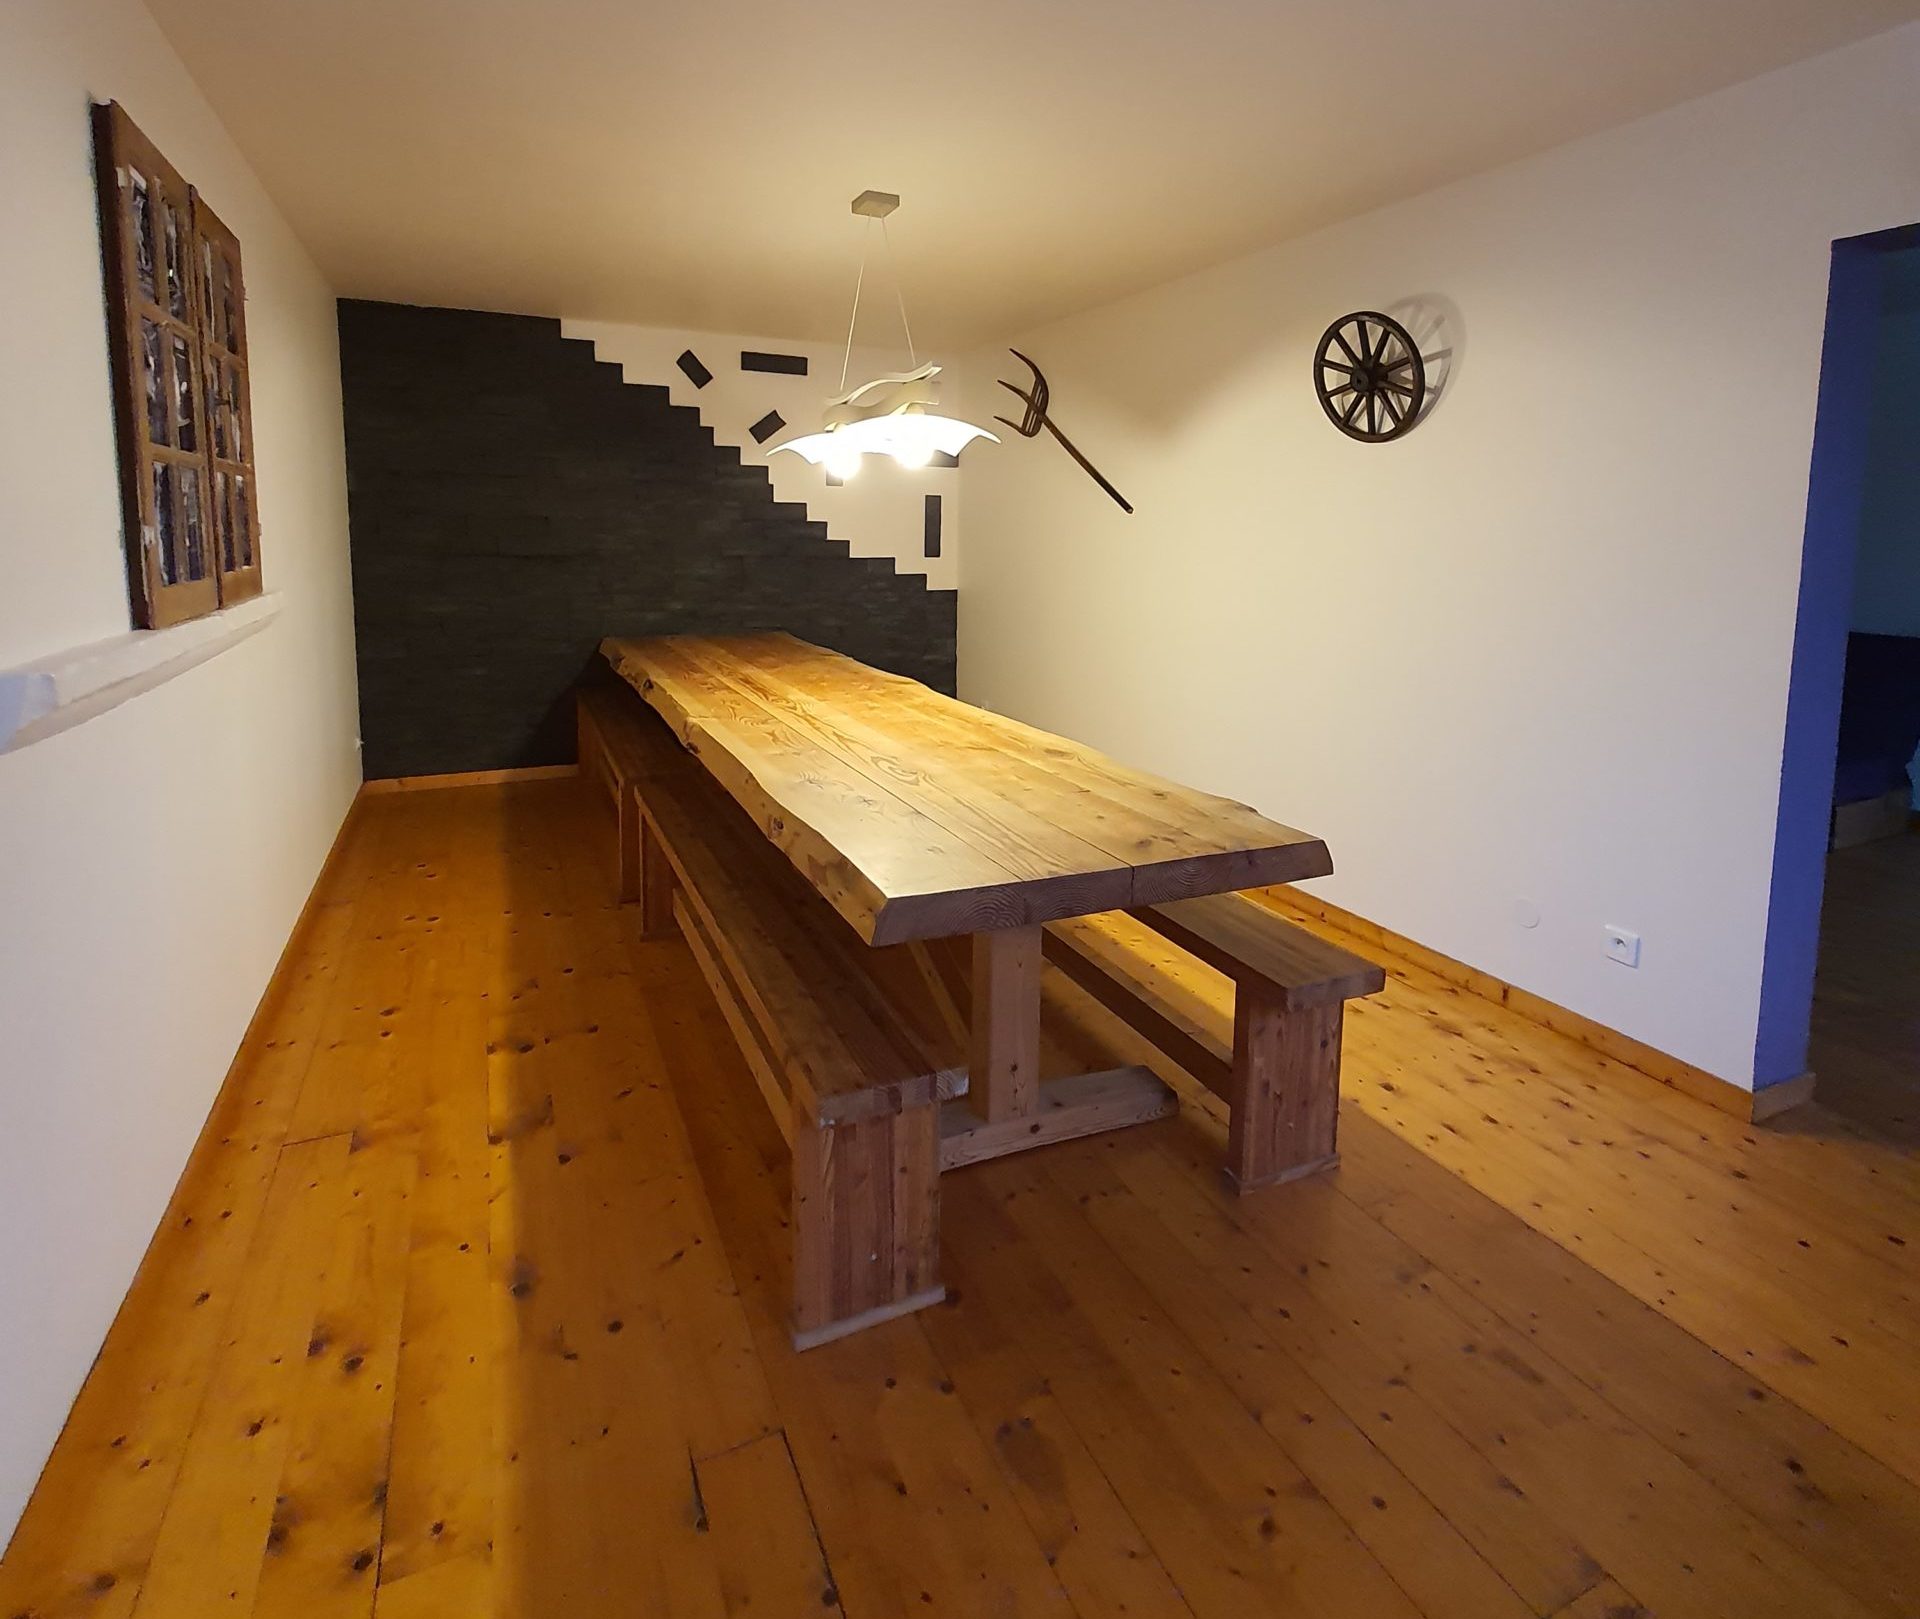 Une salle à manger avec une belle table en bois